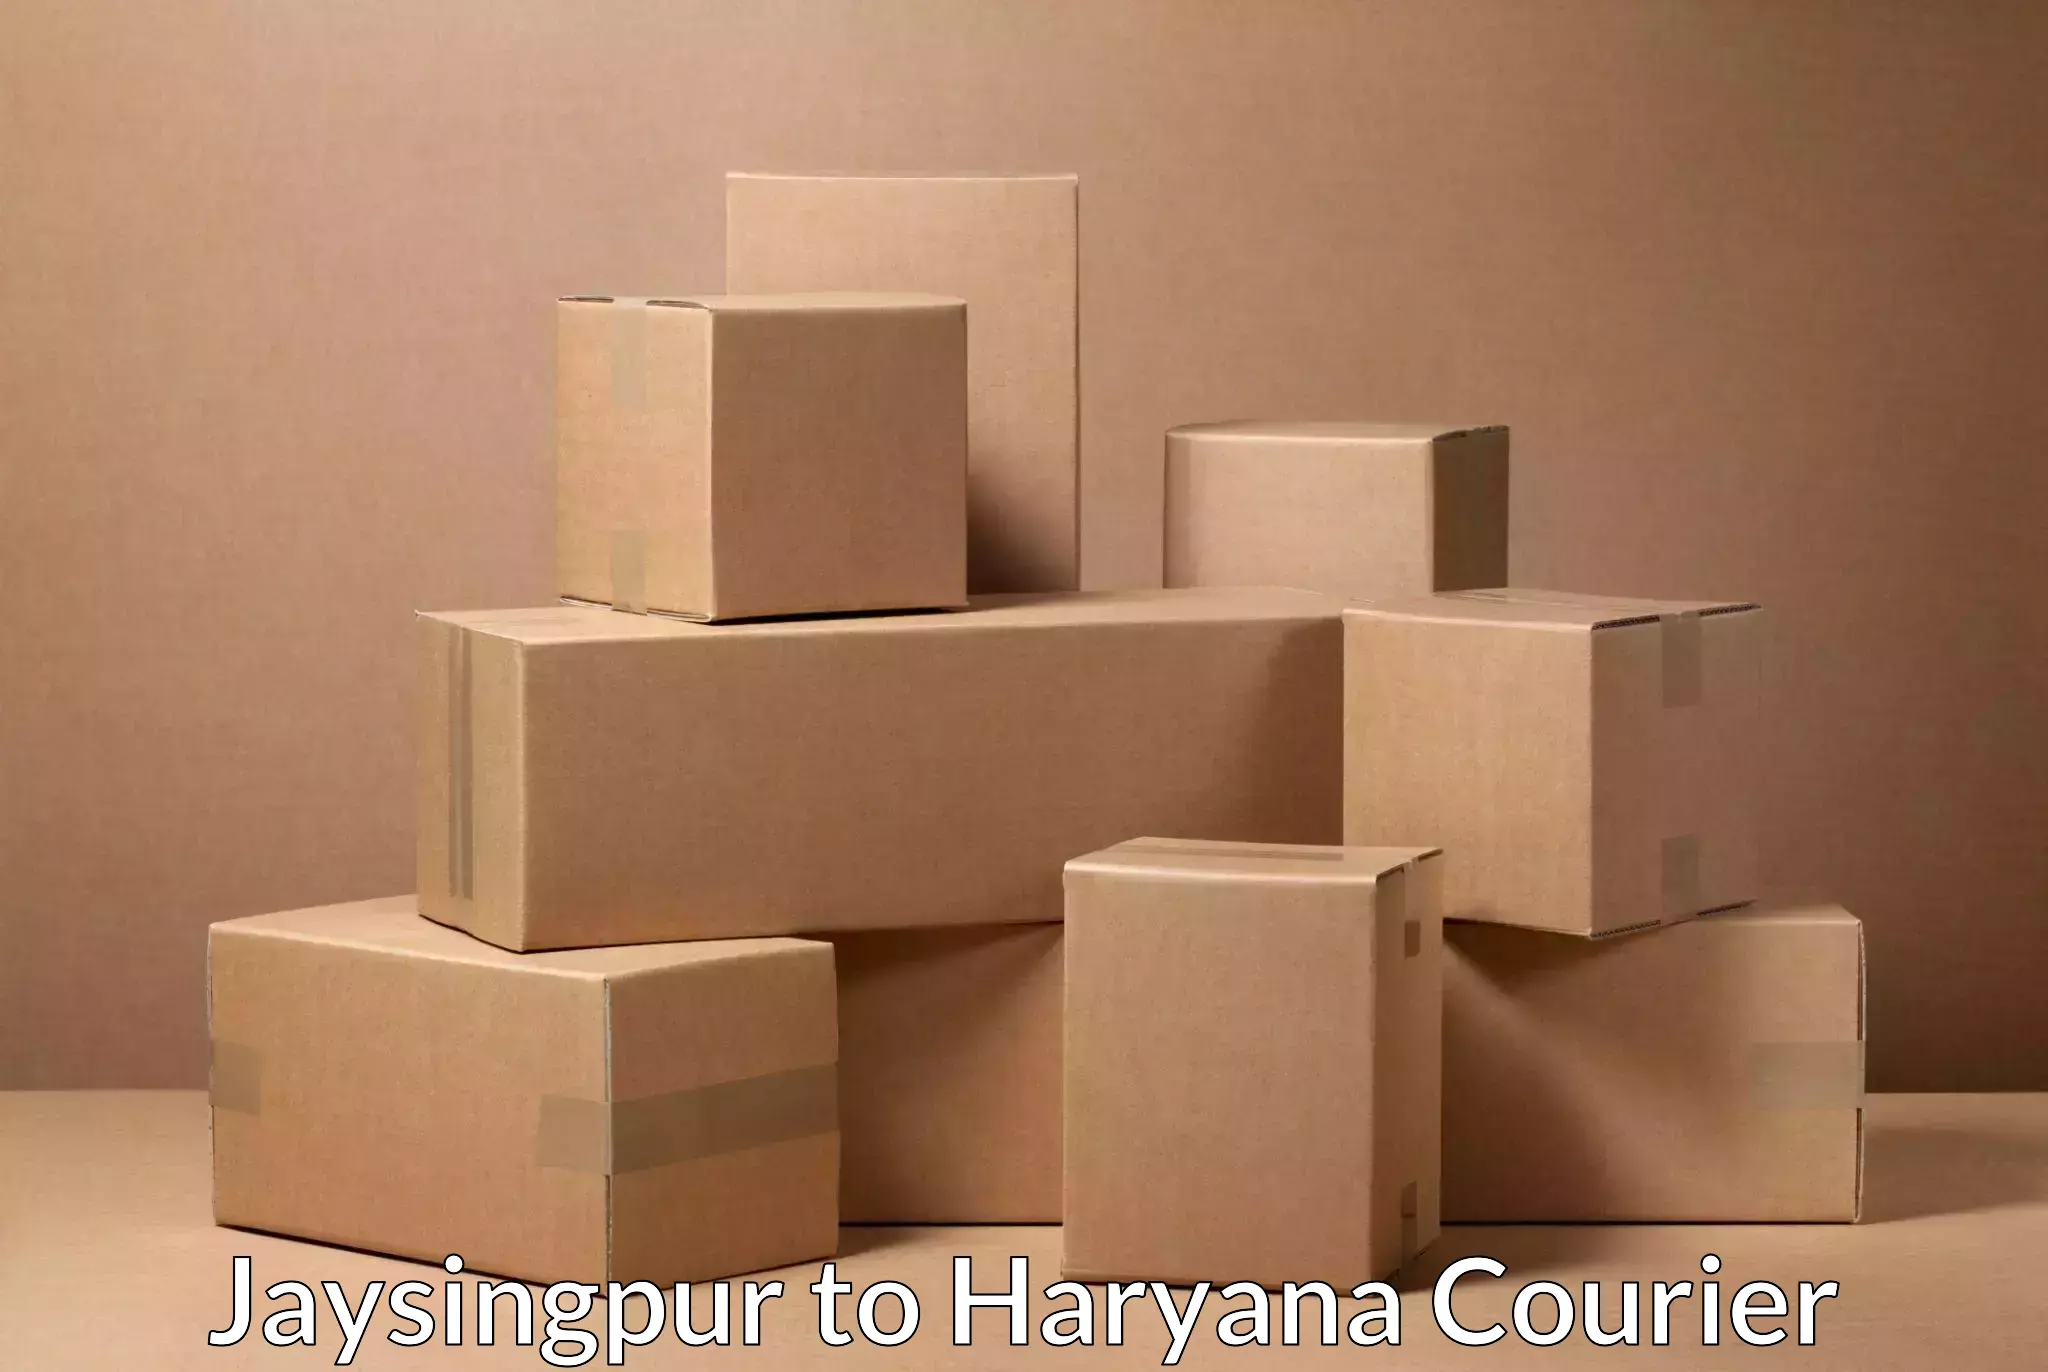 Express postal services Jaysingpur to Hansi